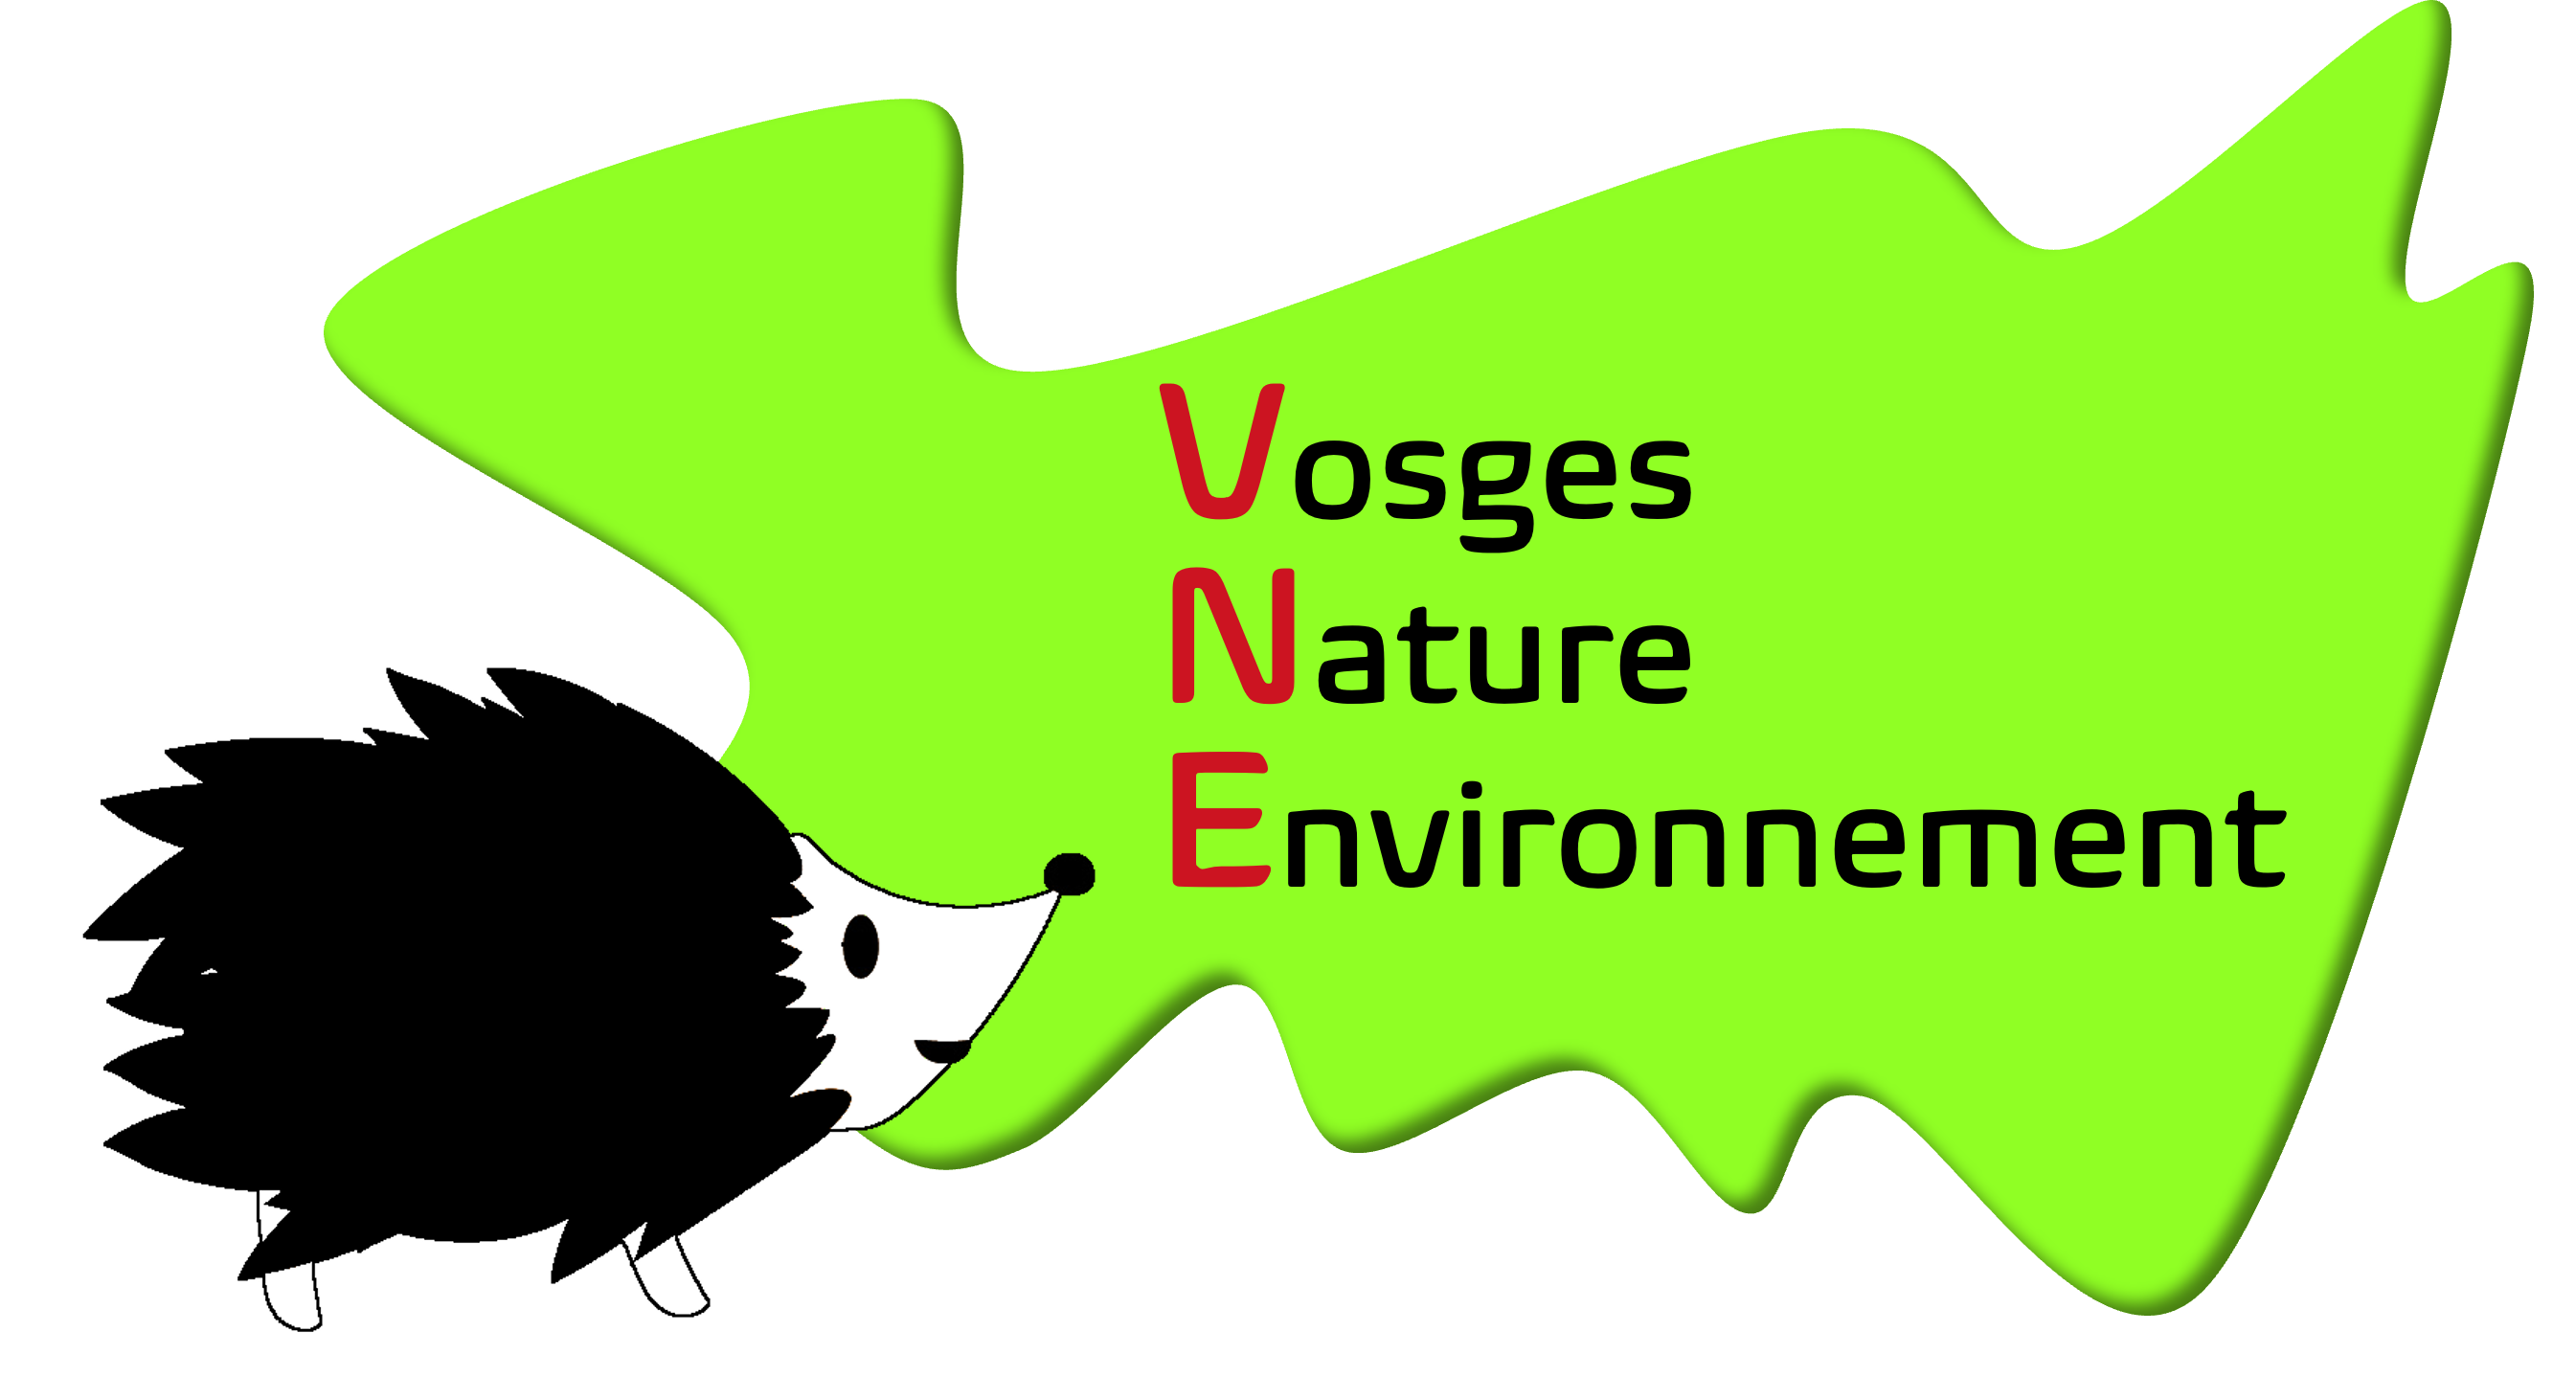 Vosges Nature Environnement